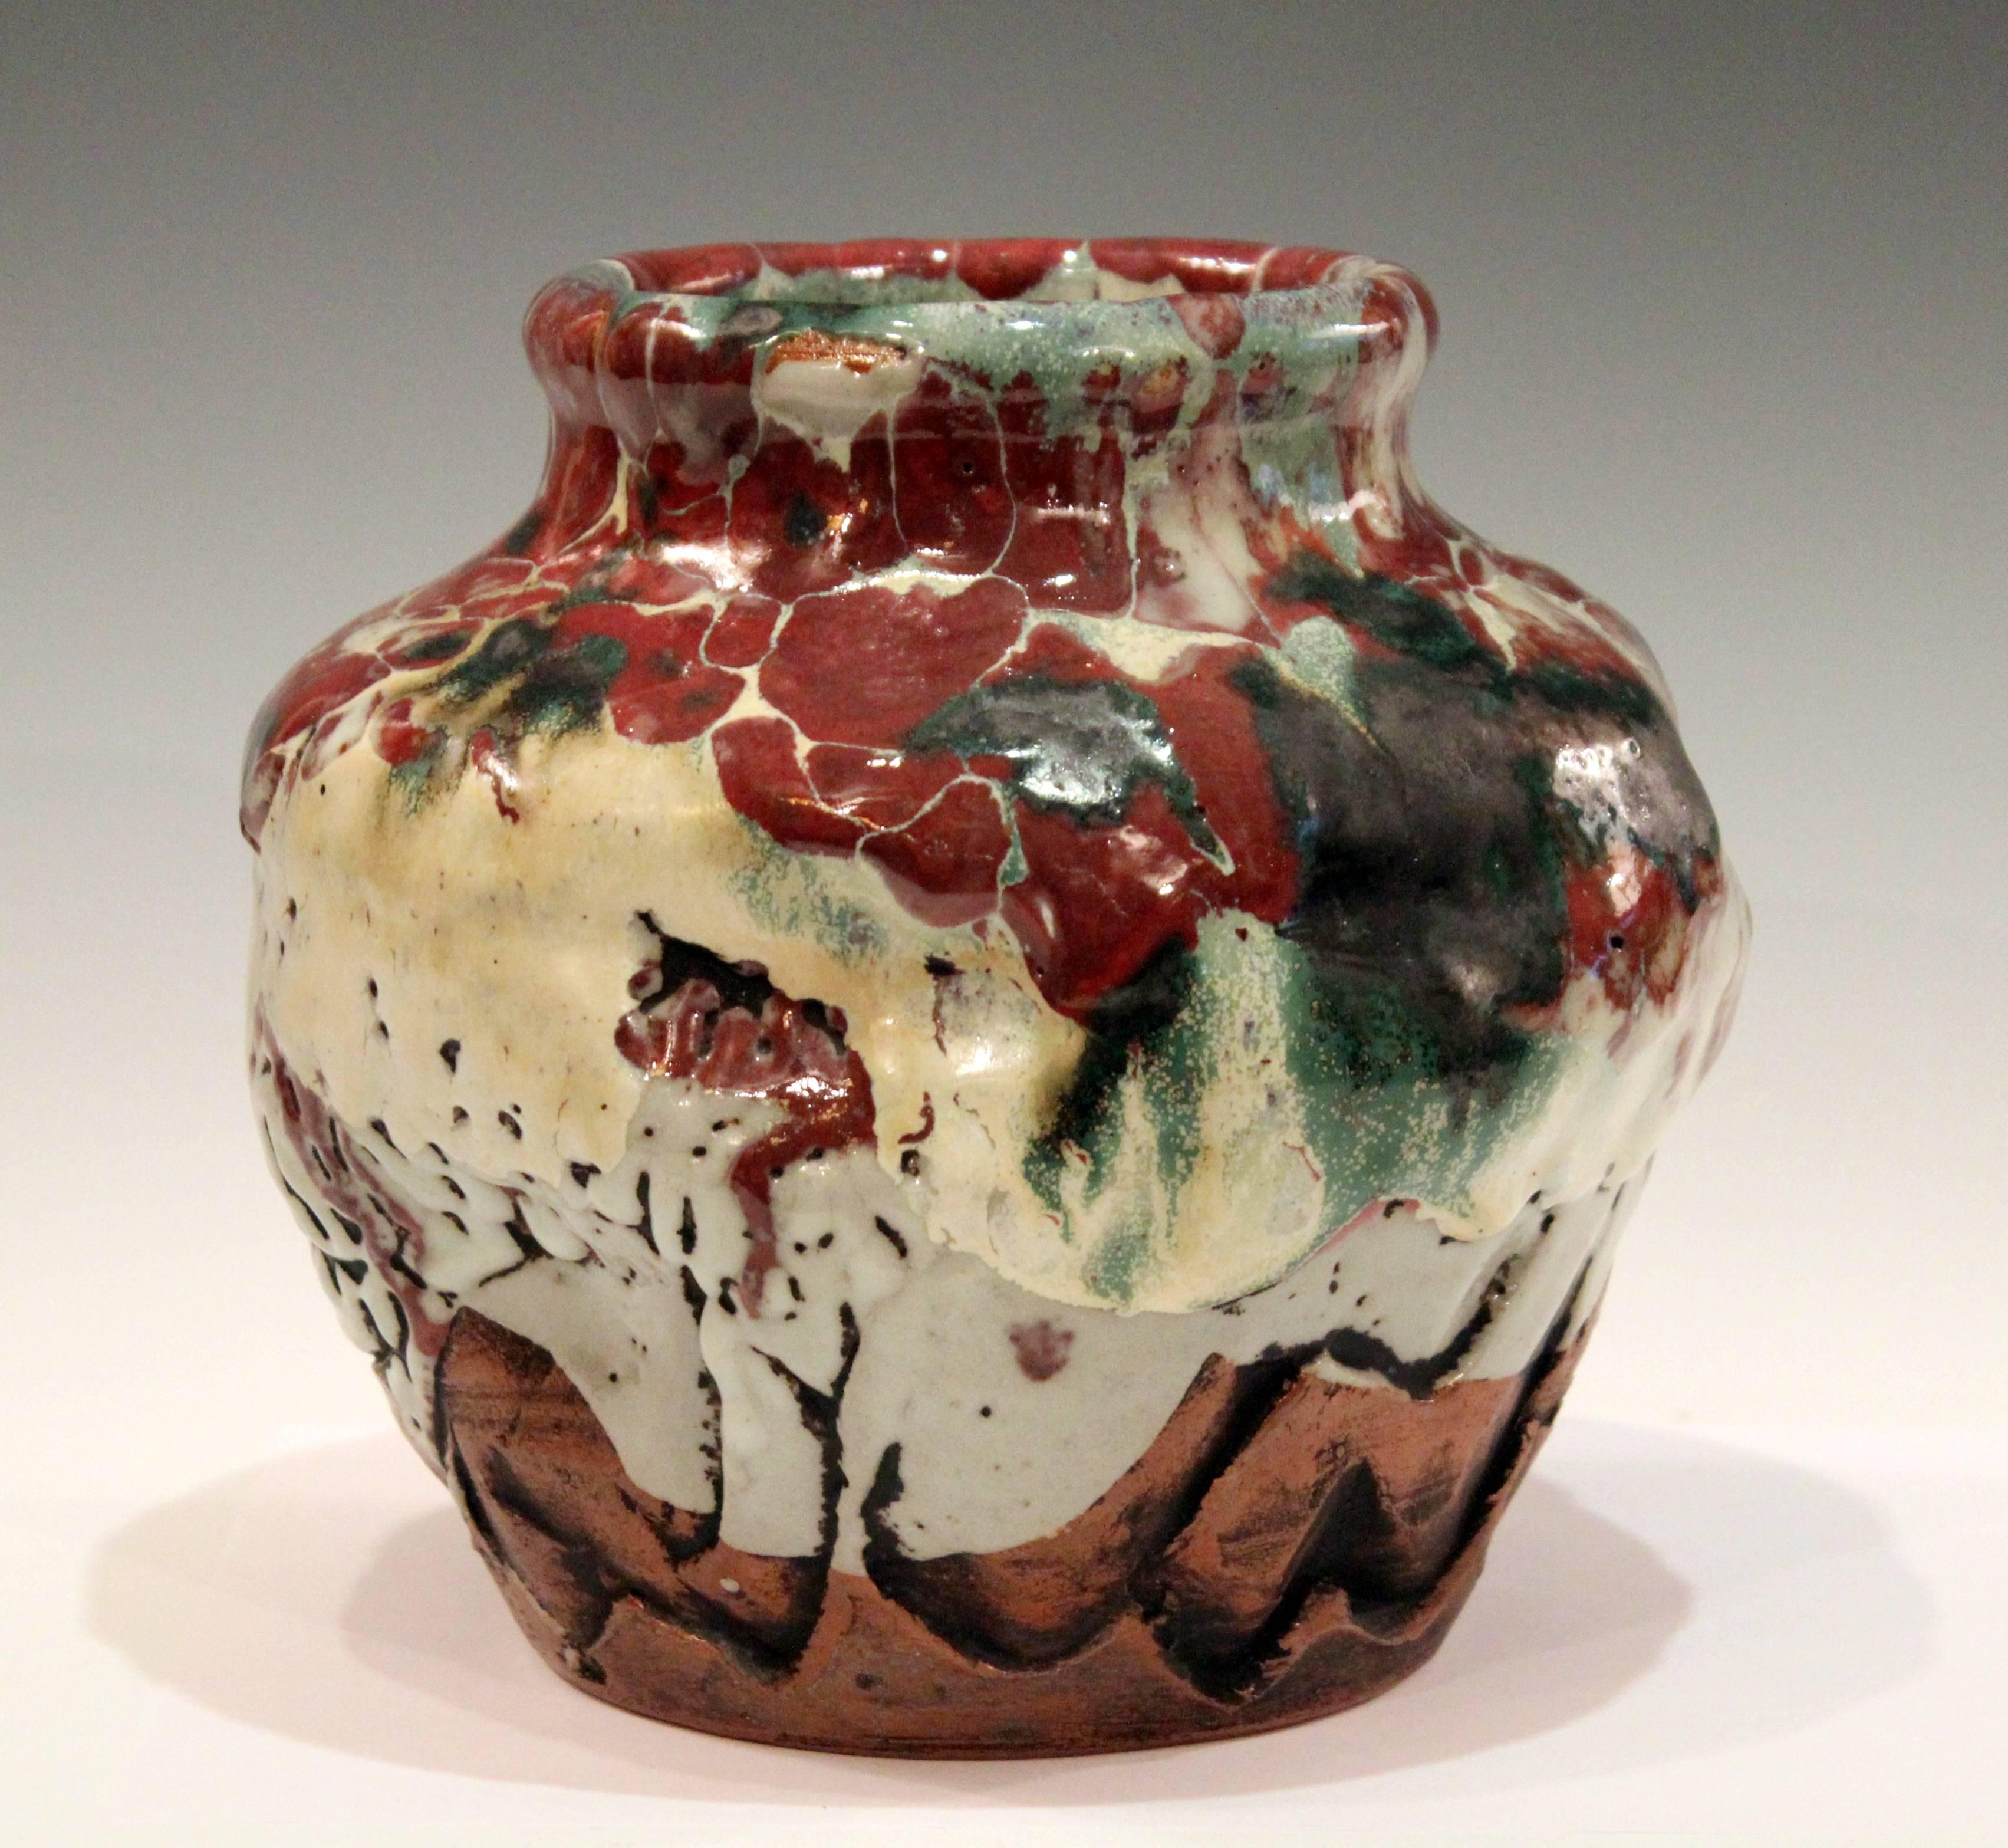 Stoneware Awaji Pottery Manipulated Jar with Crawling Lava Glaze